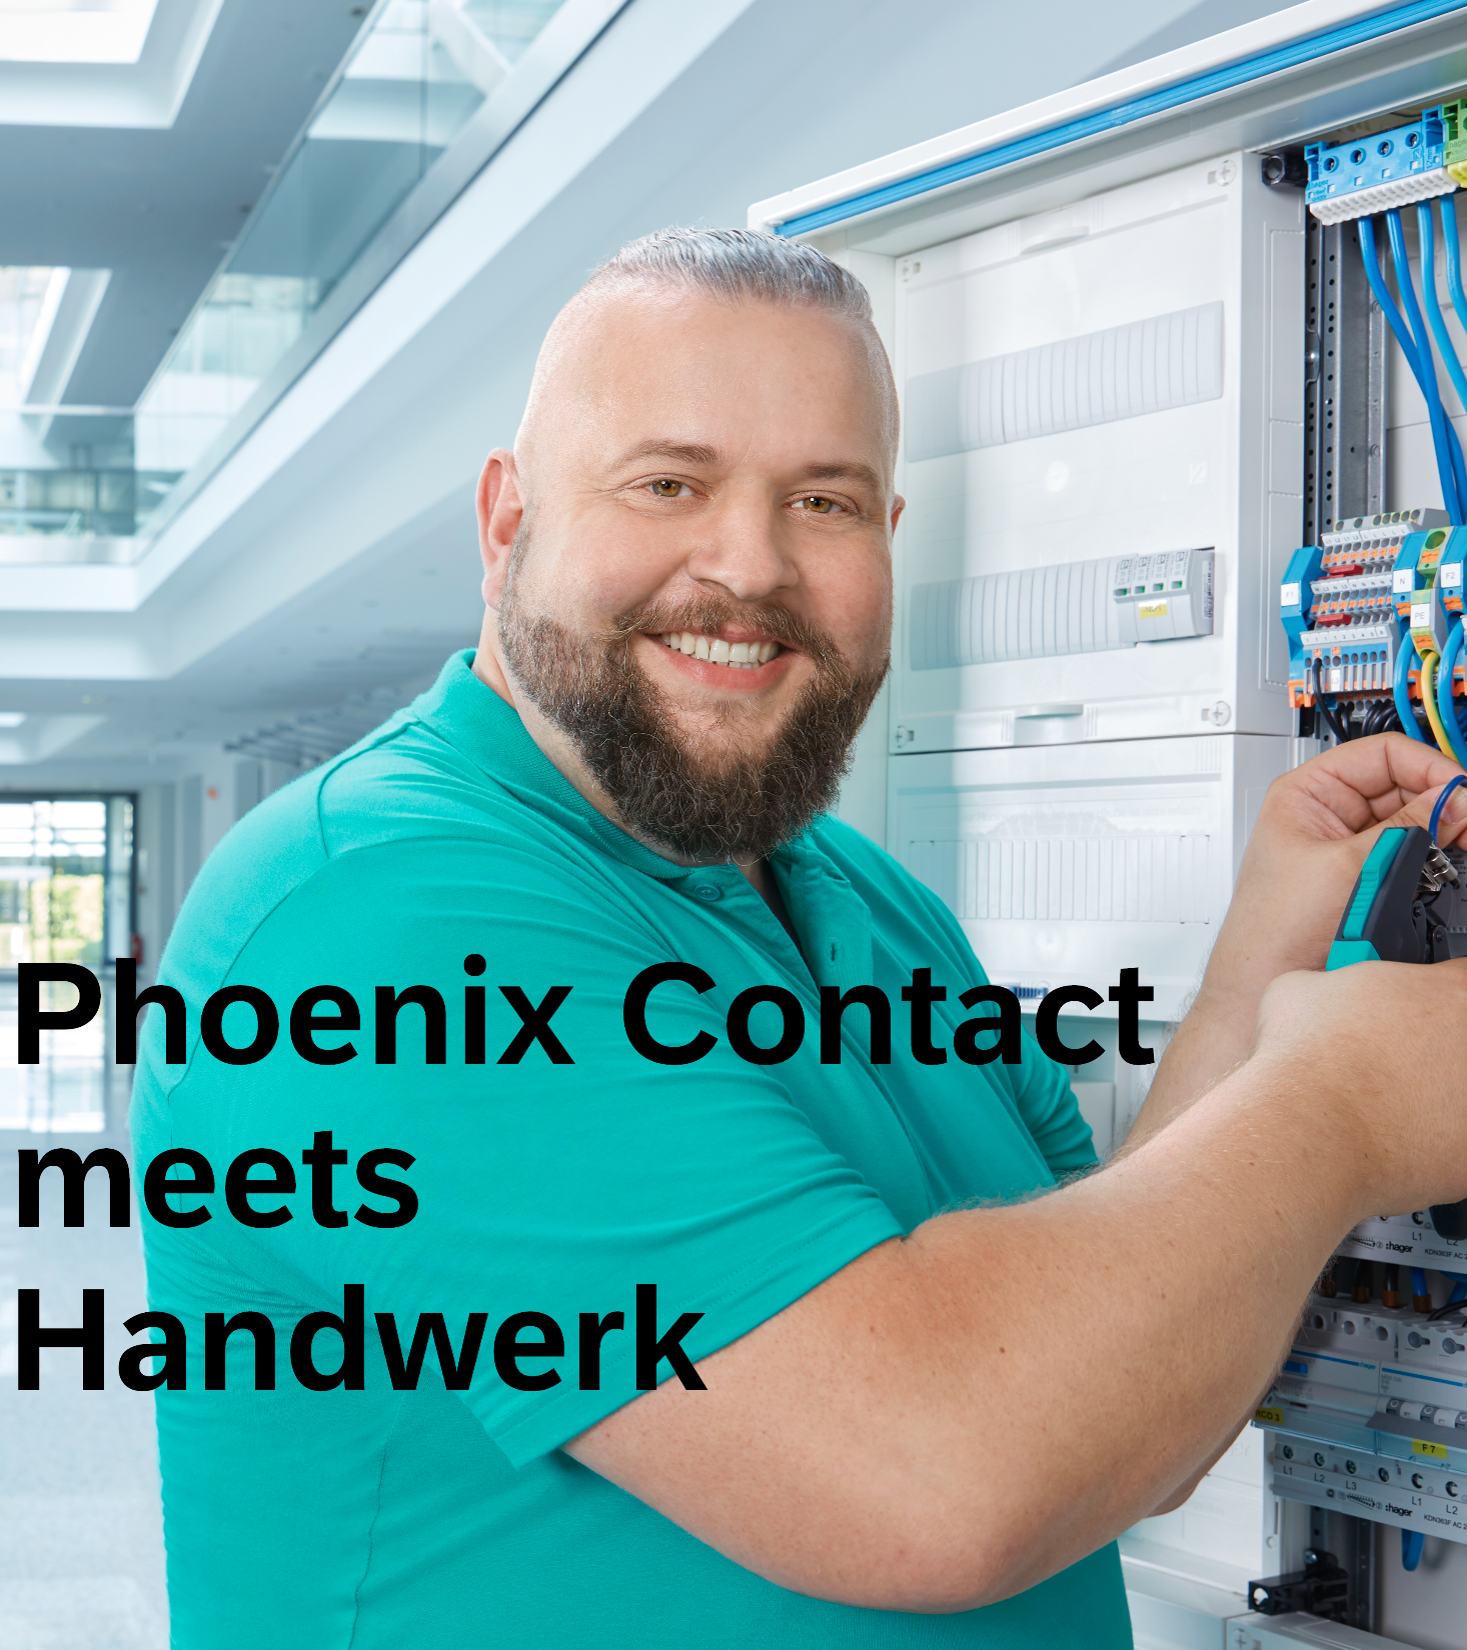 Wir sind dabei! – Beim Phoenix Contact Handwerkertag „Phoenix Contact meets Handwerk” am 12. Mai 2023 von 8:30-16:00 Uhr in der Schüco Arena in Bielefeld.